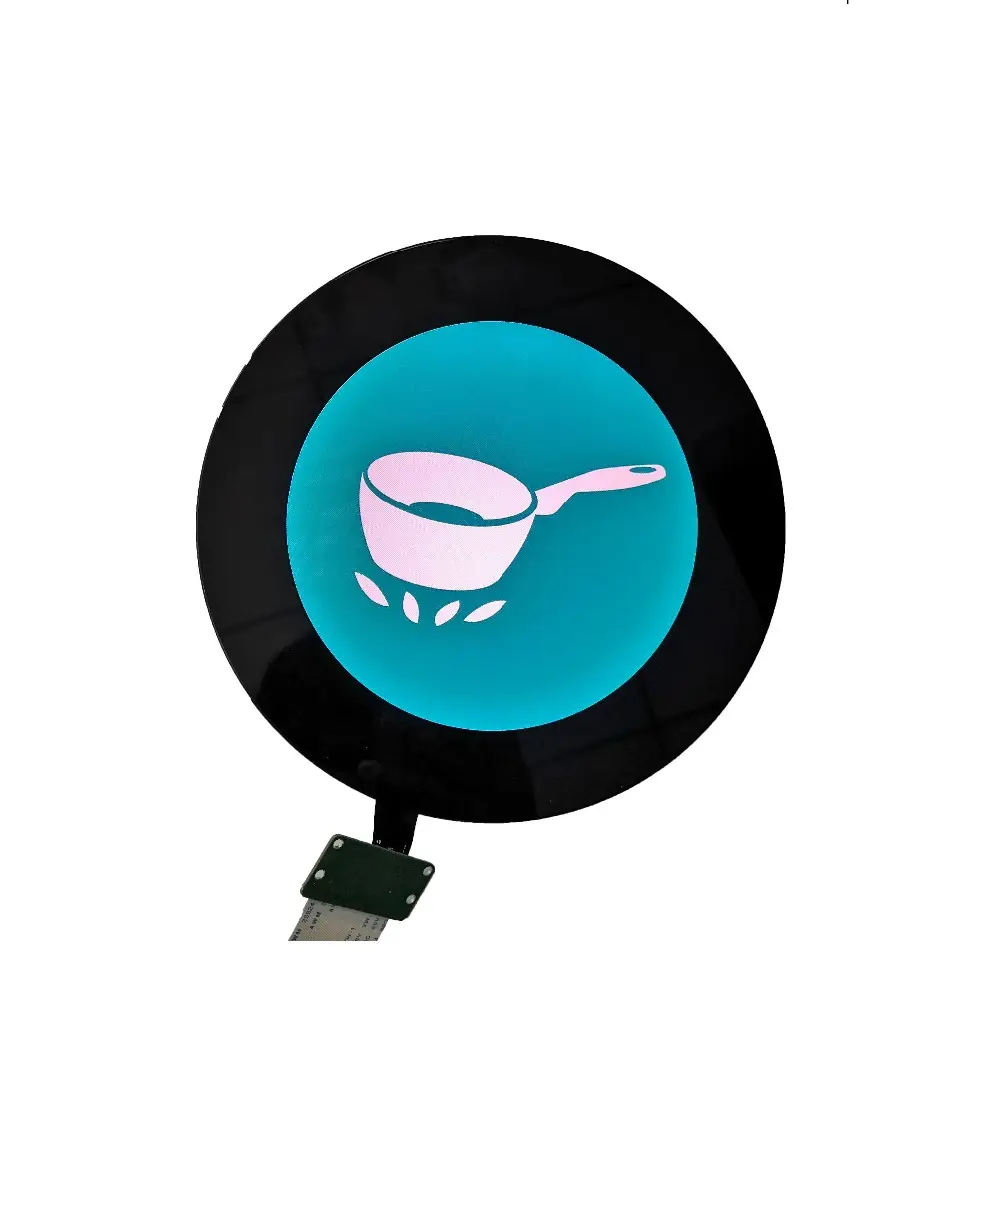 ZXFHMI Lcds Hmi Plc Serba Dalam Satu Flex Pcba Pcb Merakit Penyedia Skema Layanan untuk Jam Tangan Pintar Putaran Dial Melingkar Layar Lcd